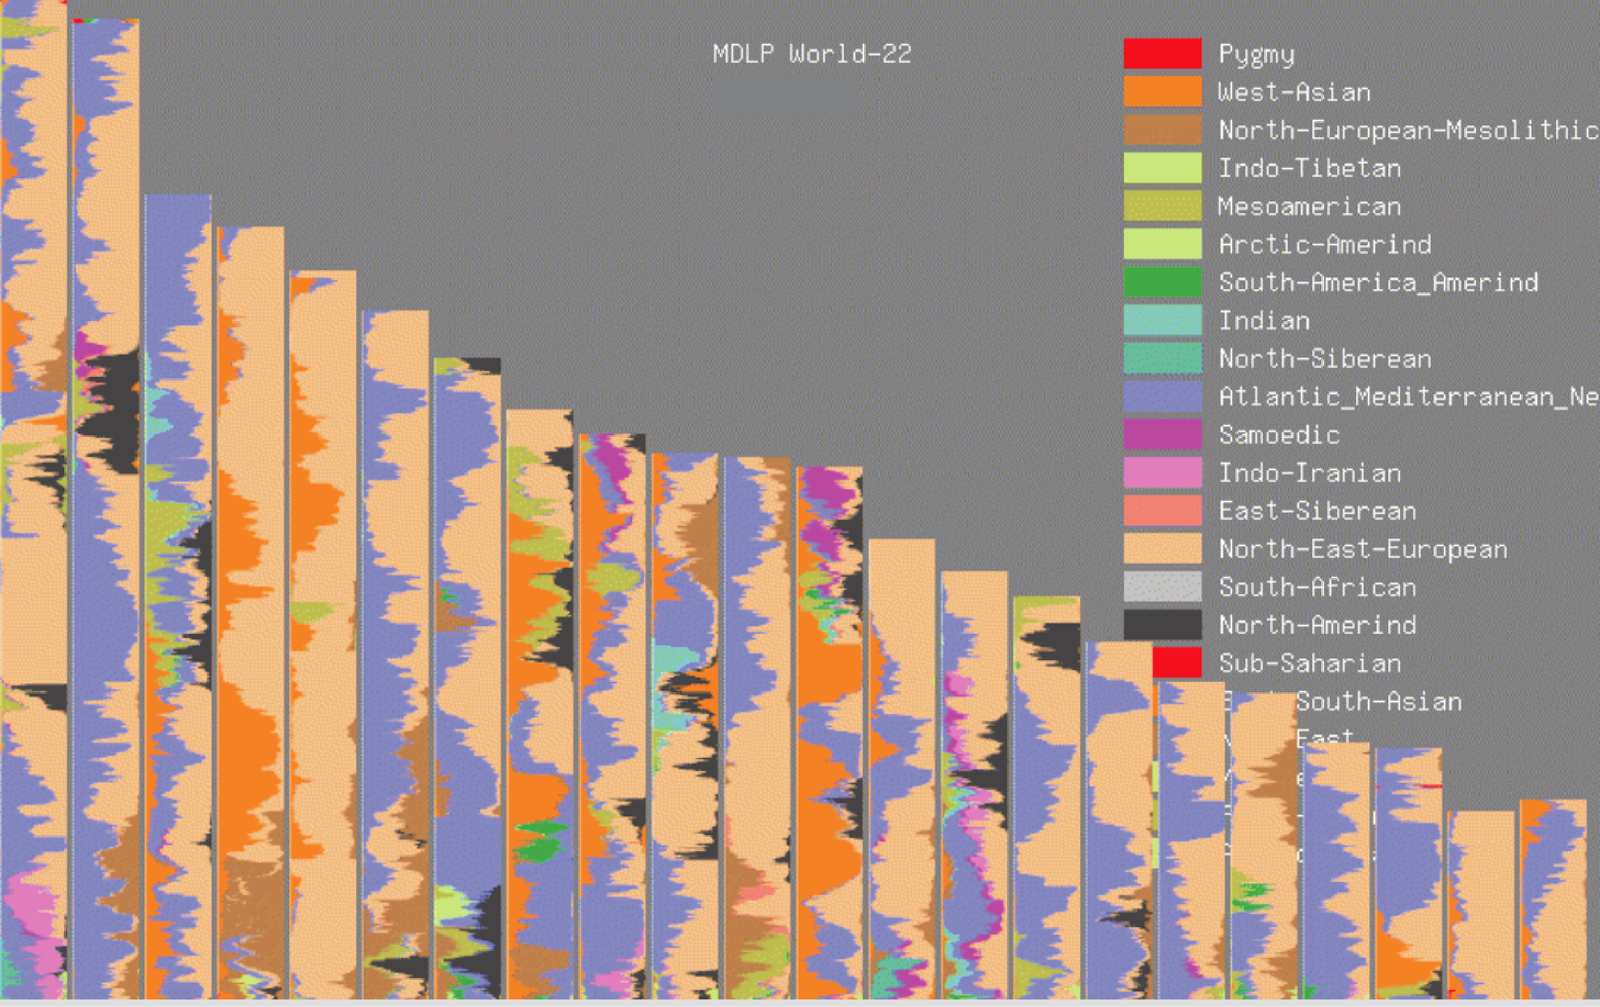 Resultados da mistura GEDmatch MDLP World-22 exibidos como pintura cromossômica.